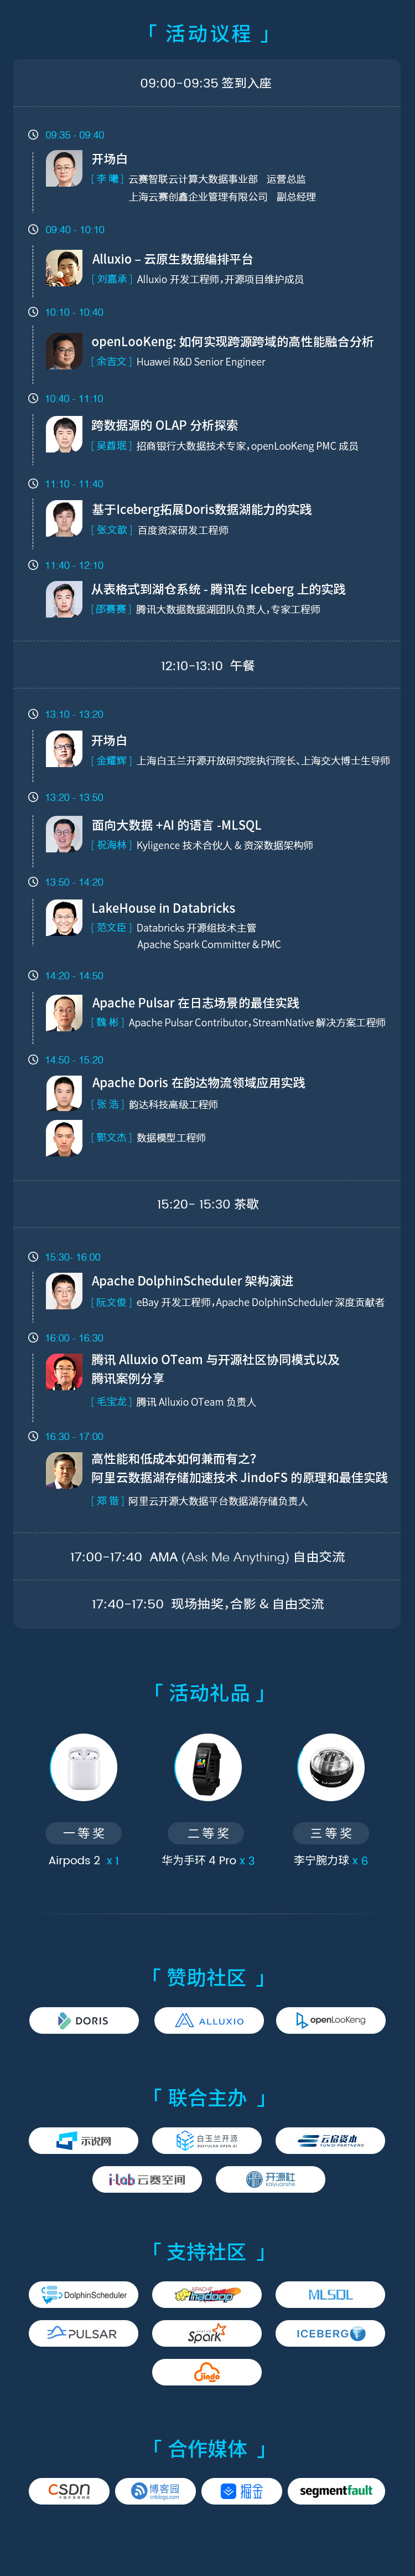 上海开源大数据技术Meetup_门票优惠_活动家官网报名